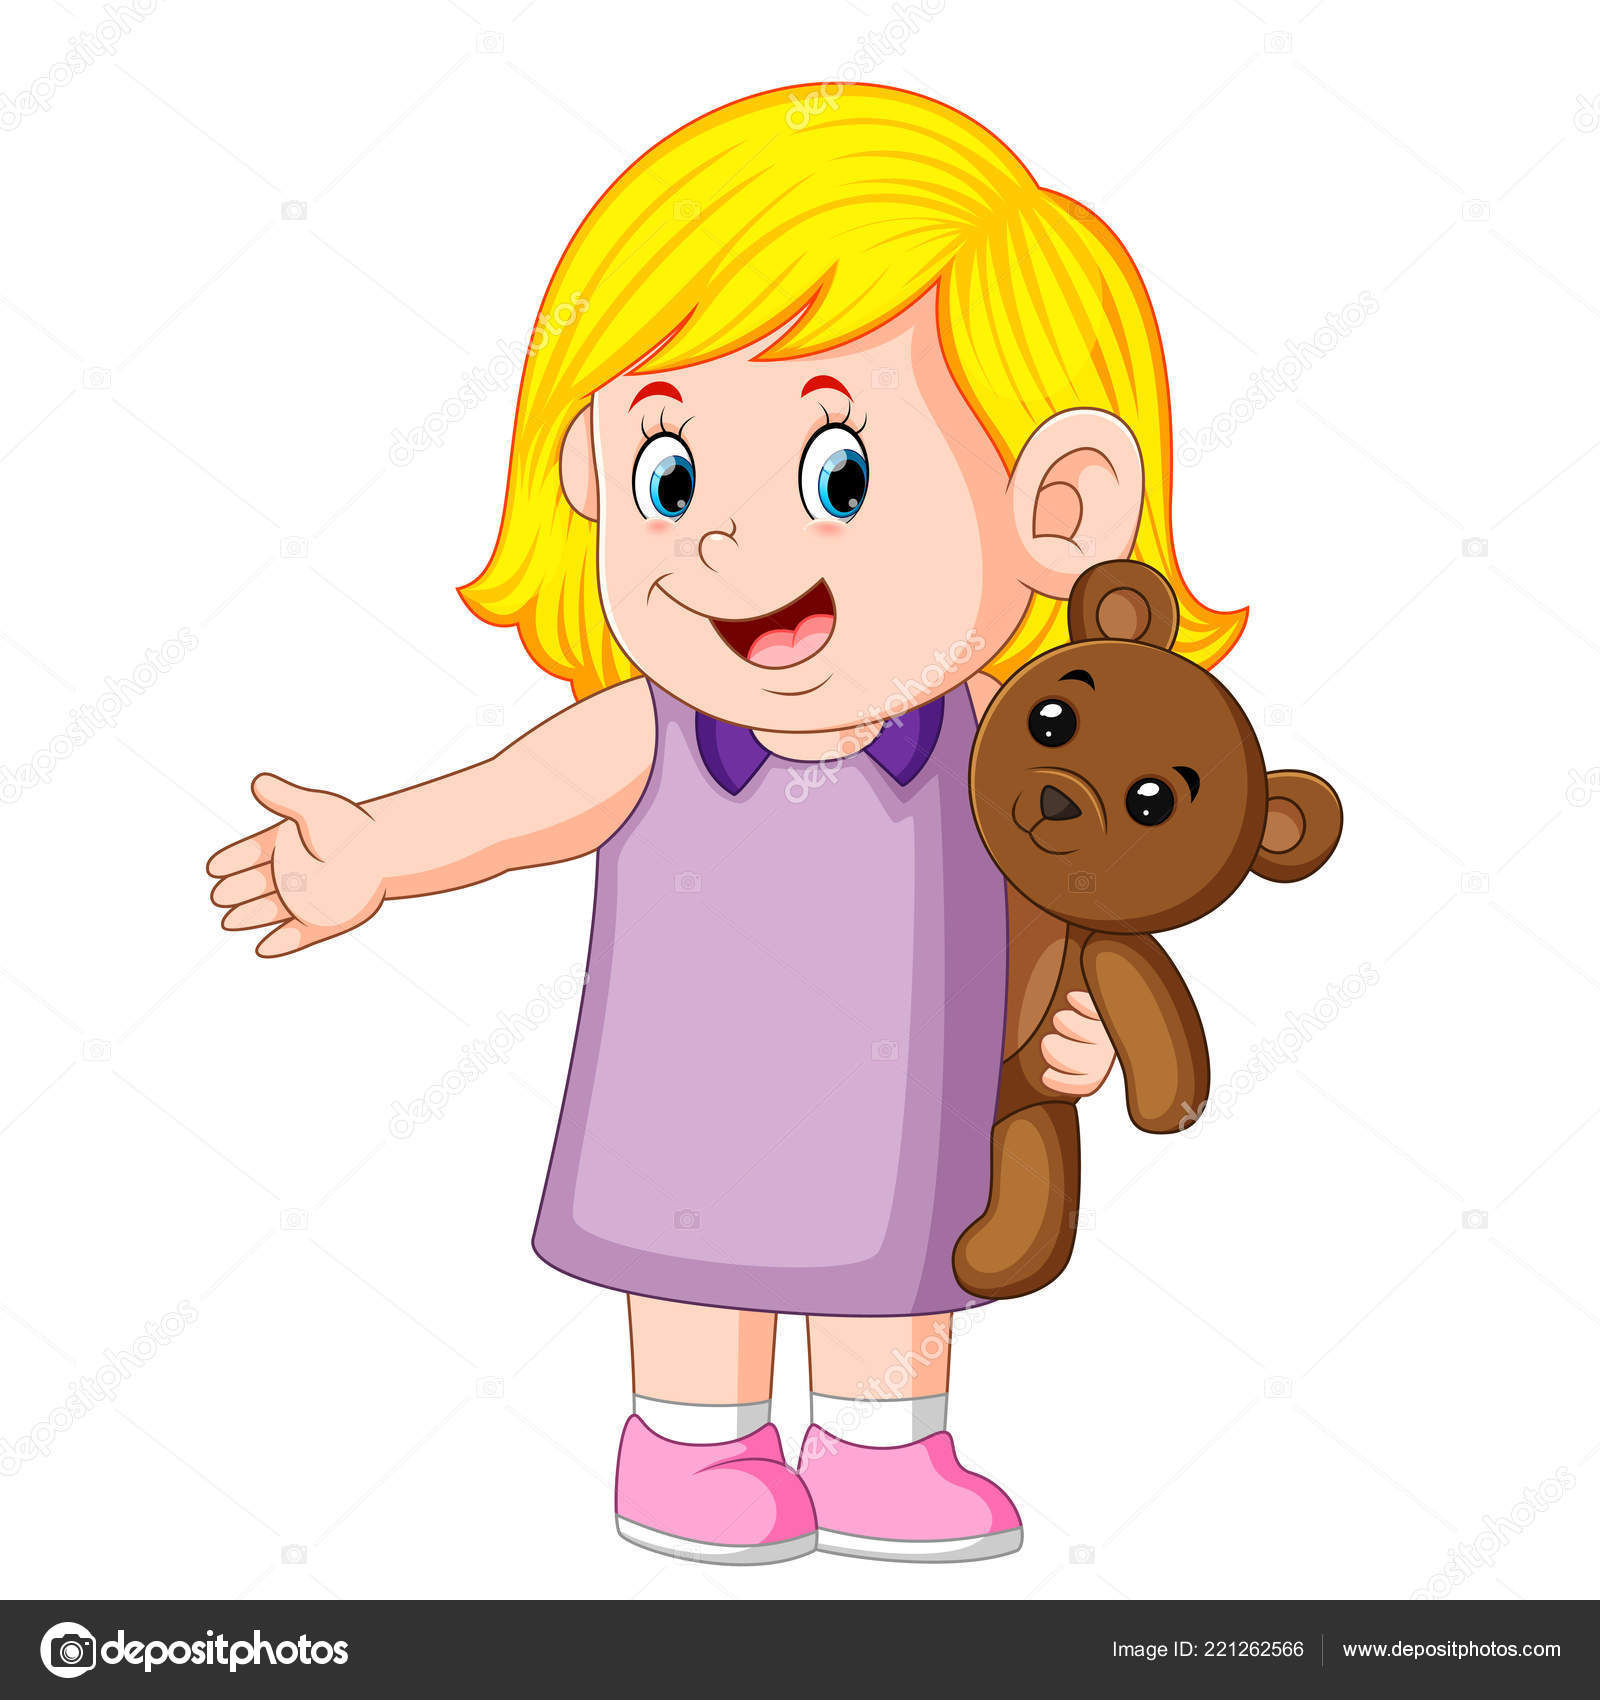 Toddler girl cartoon Vector Art Stock Images | Depositphotos